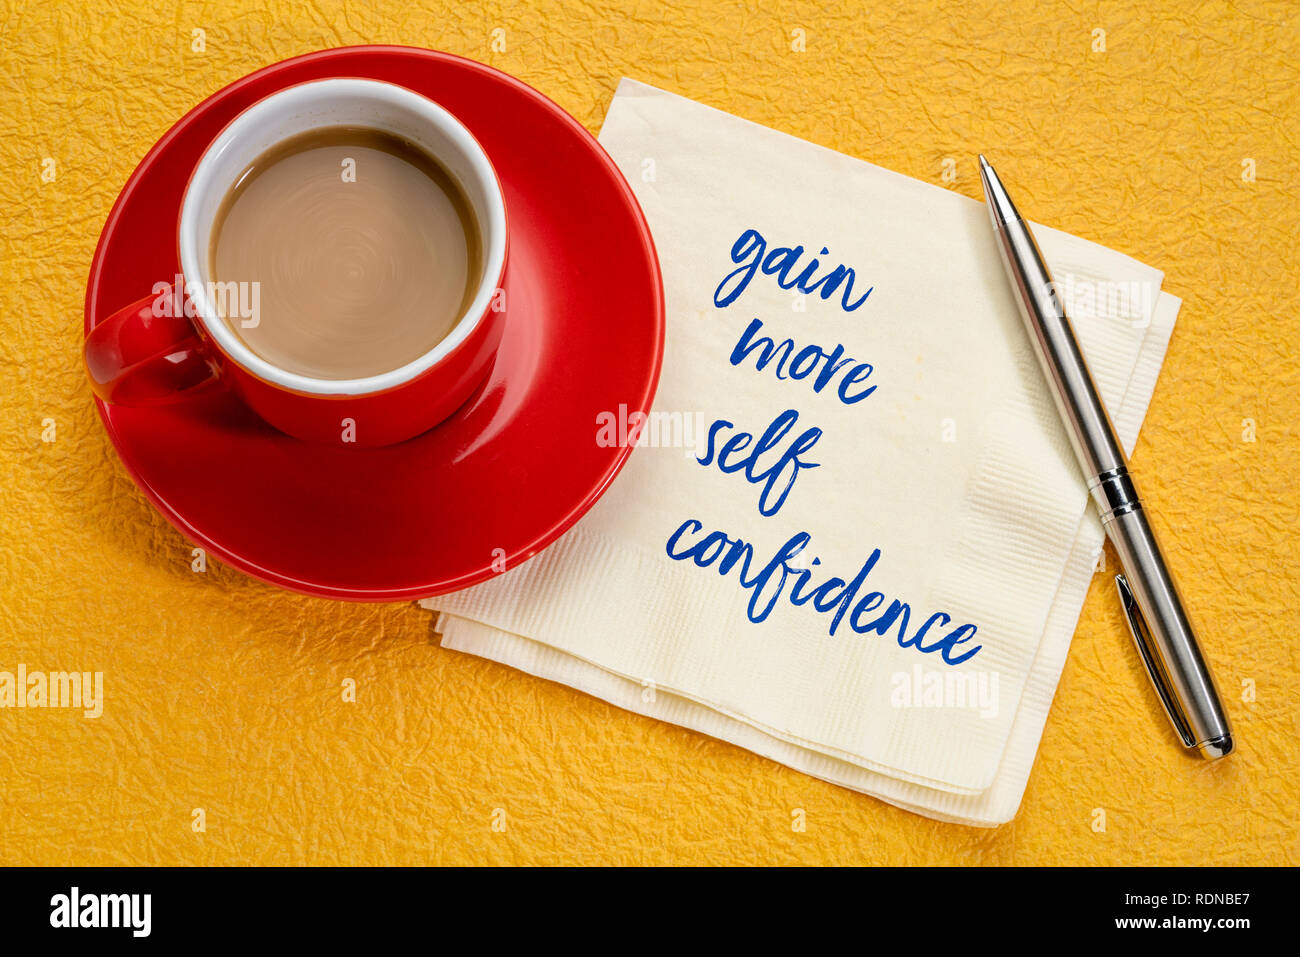 Gewinnen Sie mehr Selbstvertrauen - Handschrift auf eine Serviette mit einer Tasse Kaffee Stockfoto